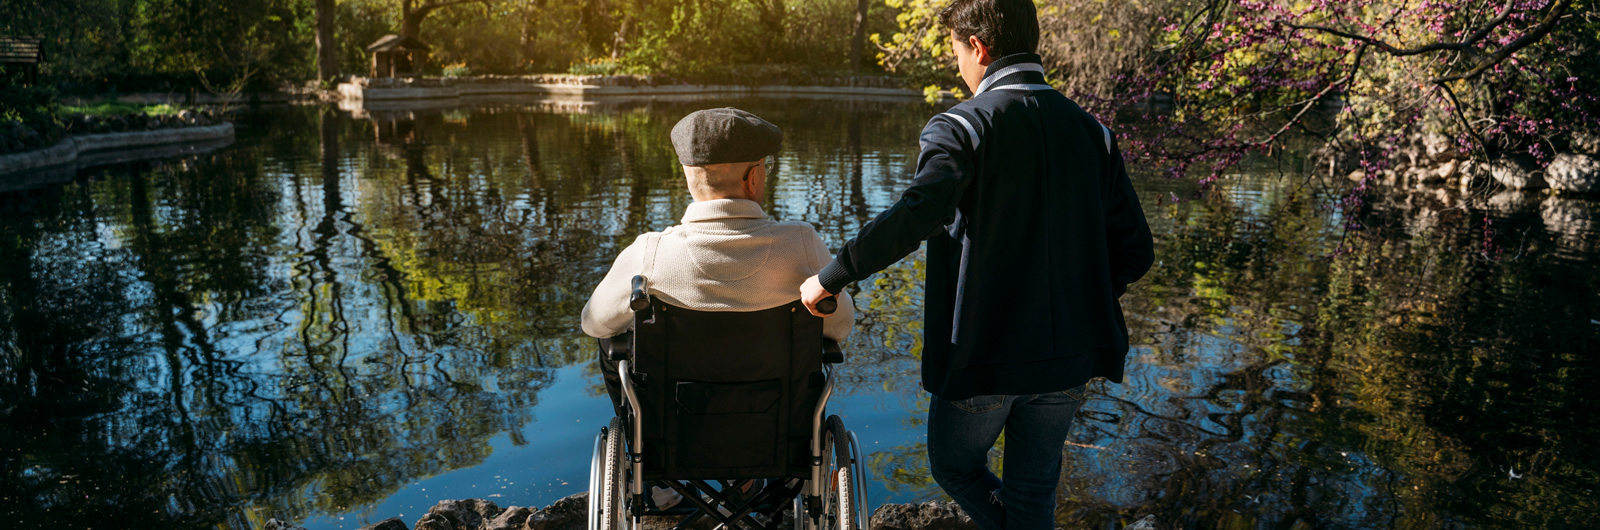 Ein junger Mann und ein alter Mann auf dem Rollstuhl vor einem kleinen See